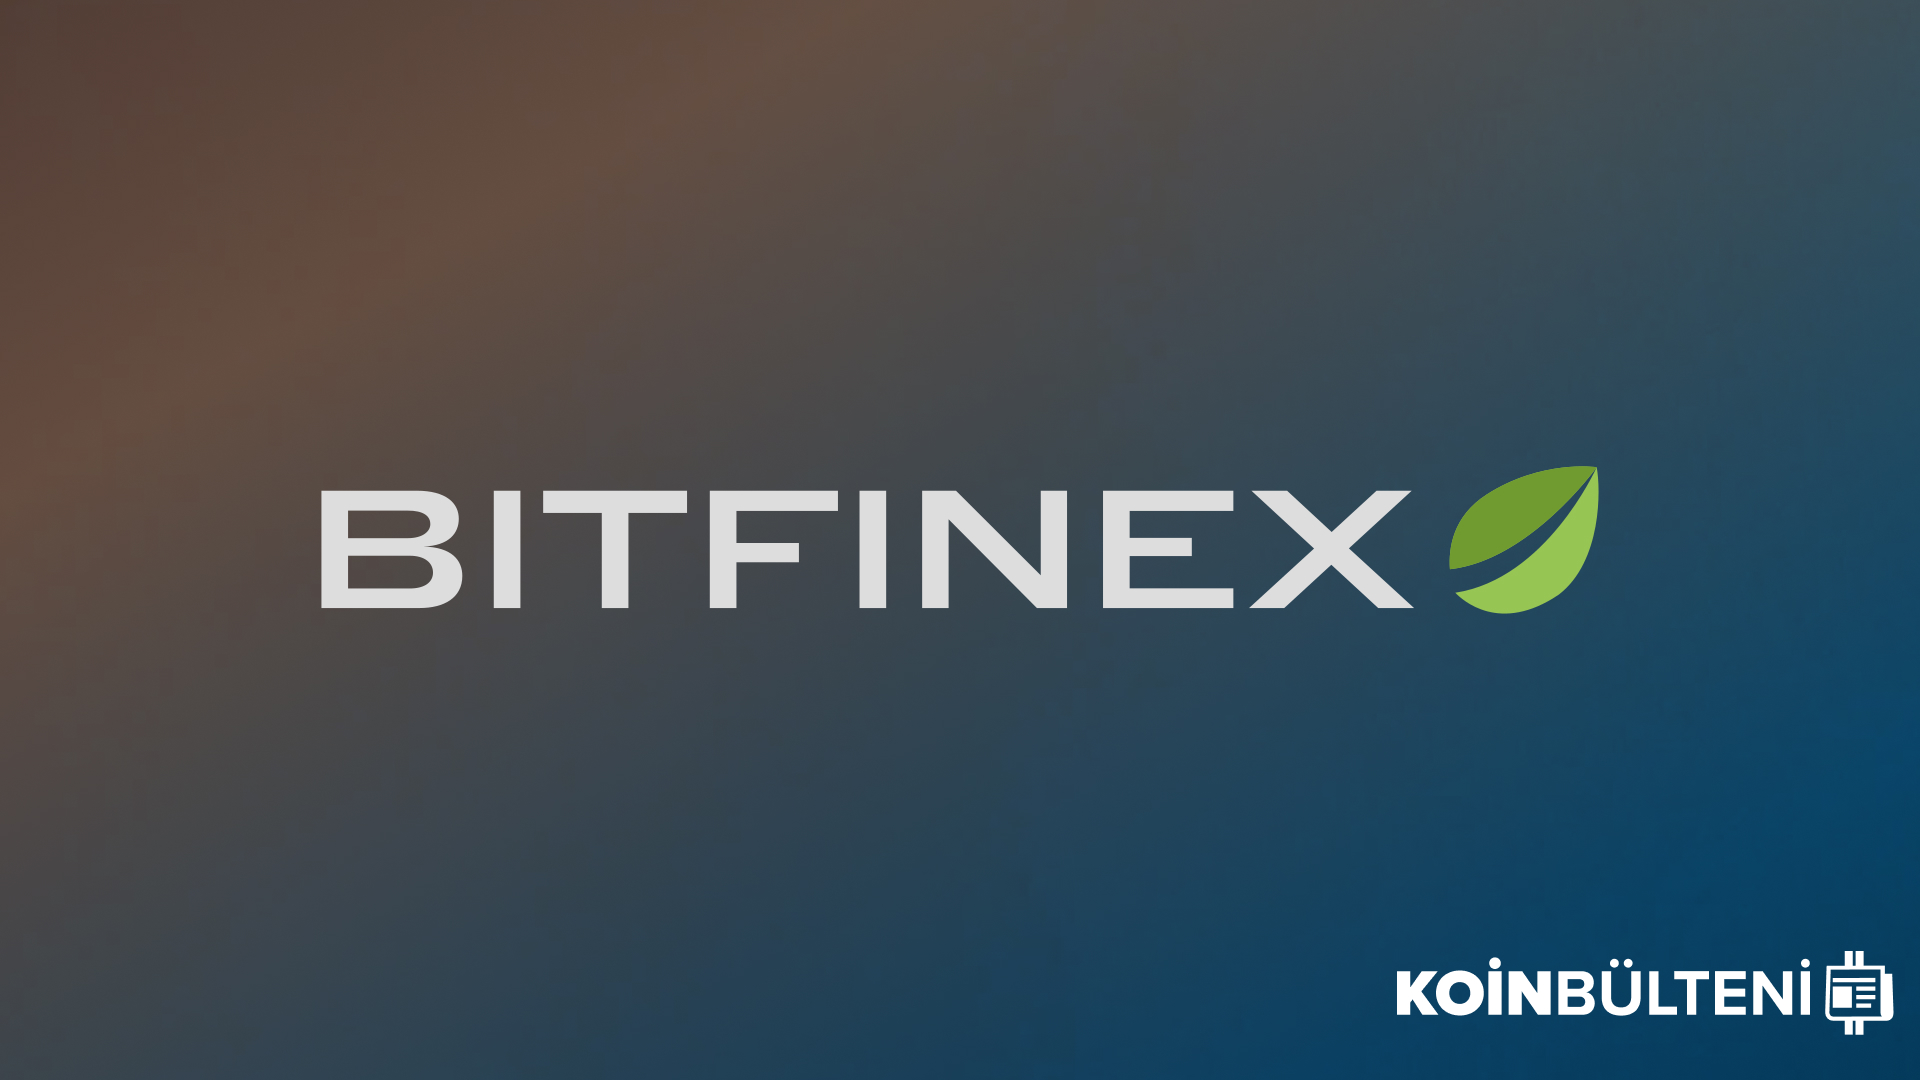 bitfinex-kripto-para-borsa-ocean-token-altcoin